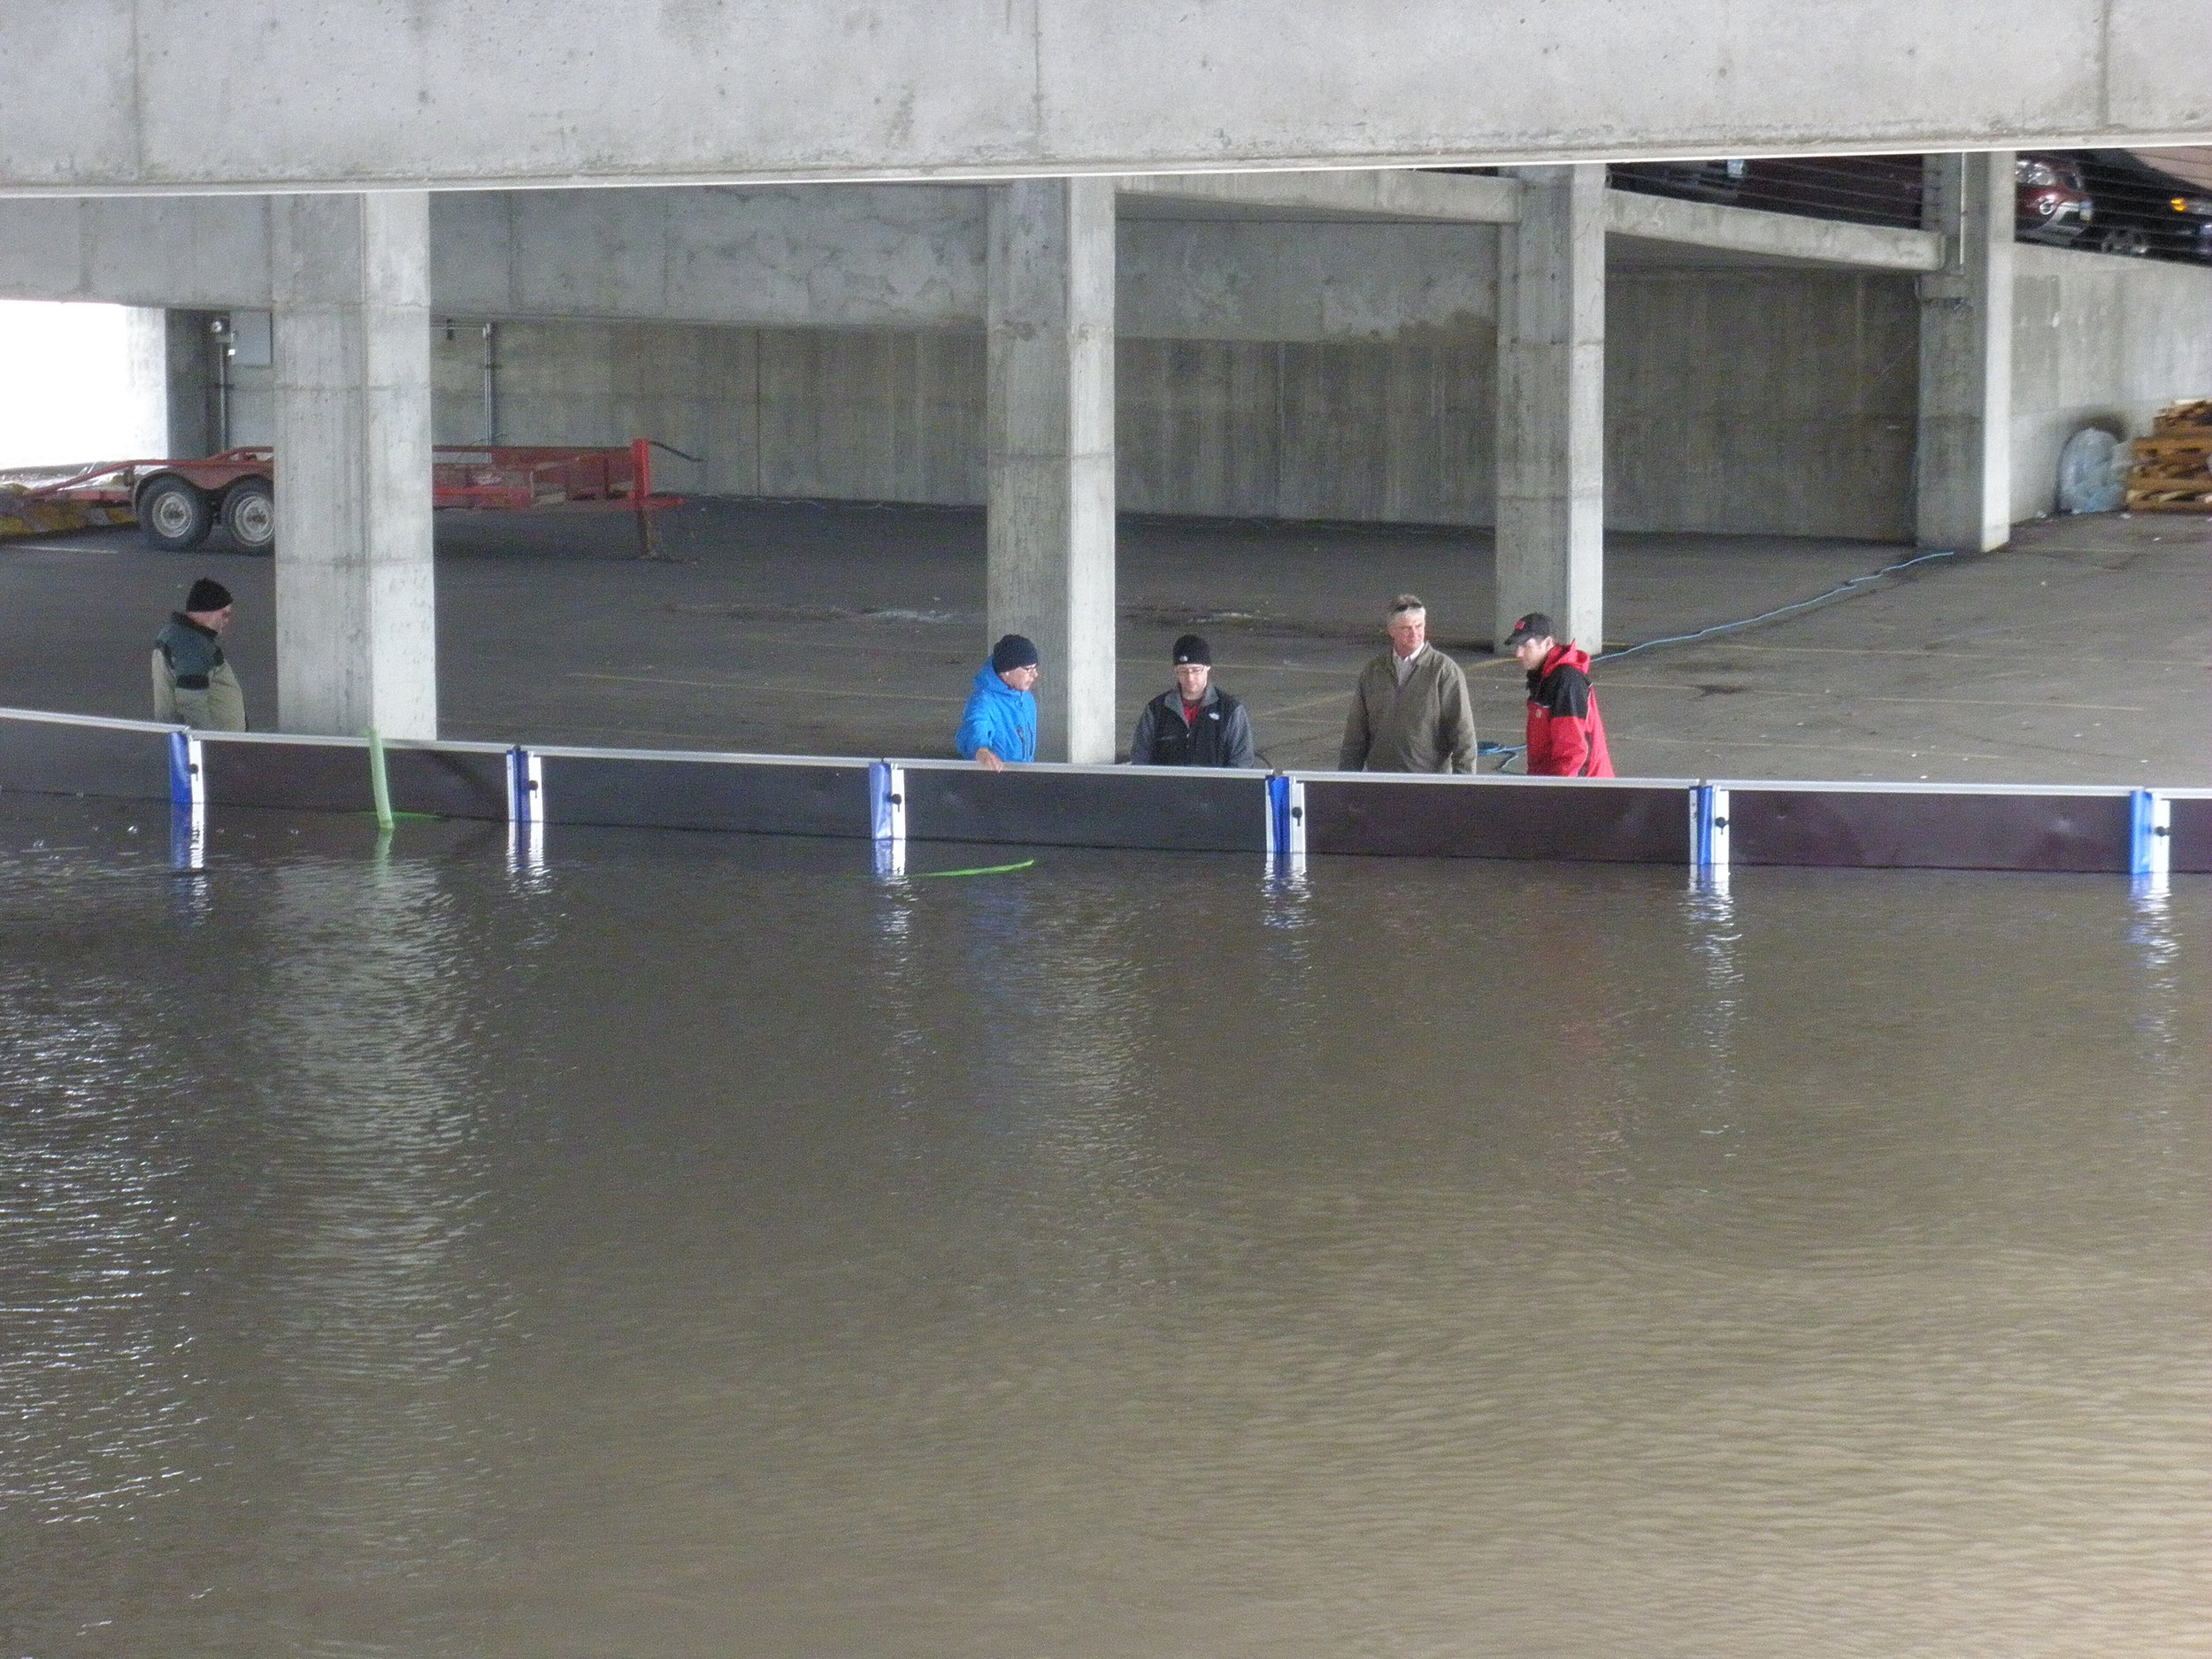   Mitigación de inundaciones desplegable   Otorgada certificación del máximo nivel para barreras contra inundaciones  - Perímetro - Aberturas - Edificio integrado - 